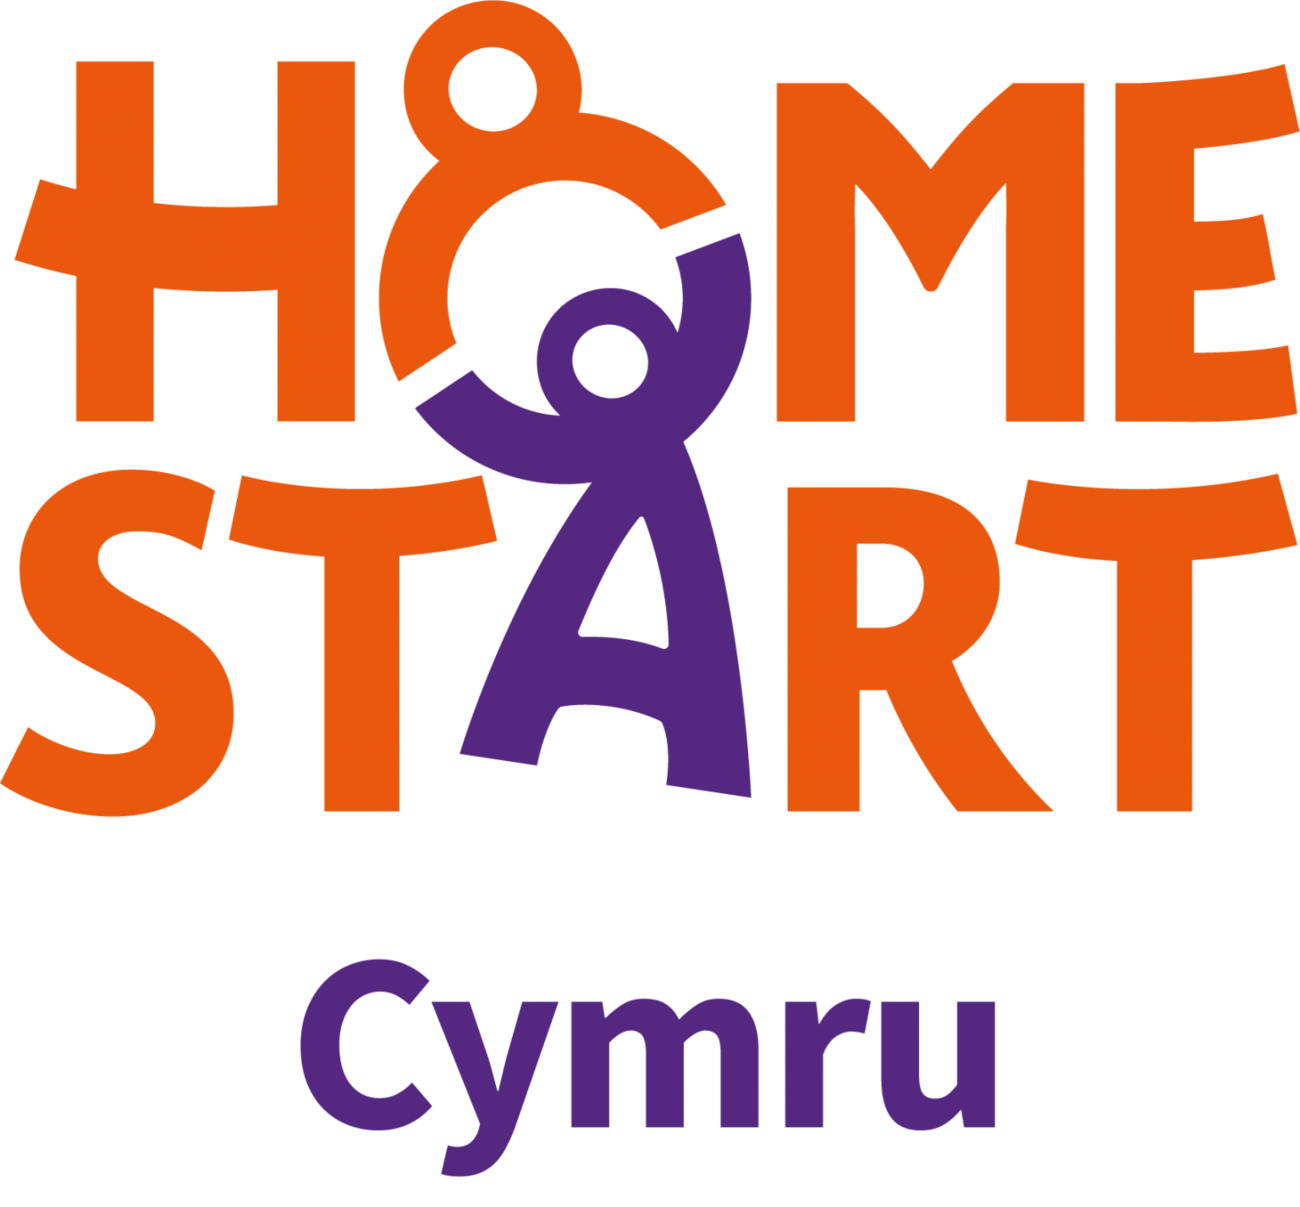 Home-Start Cymru 